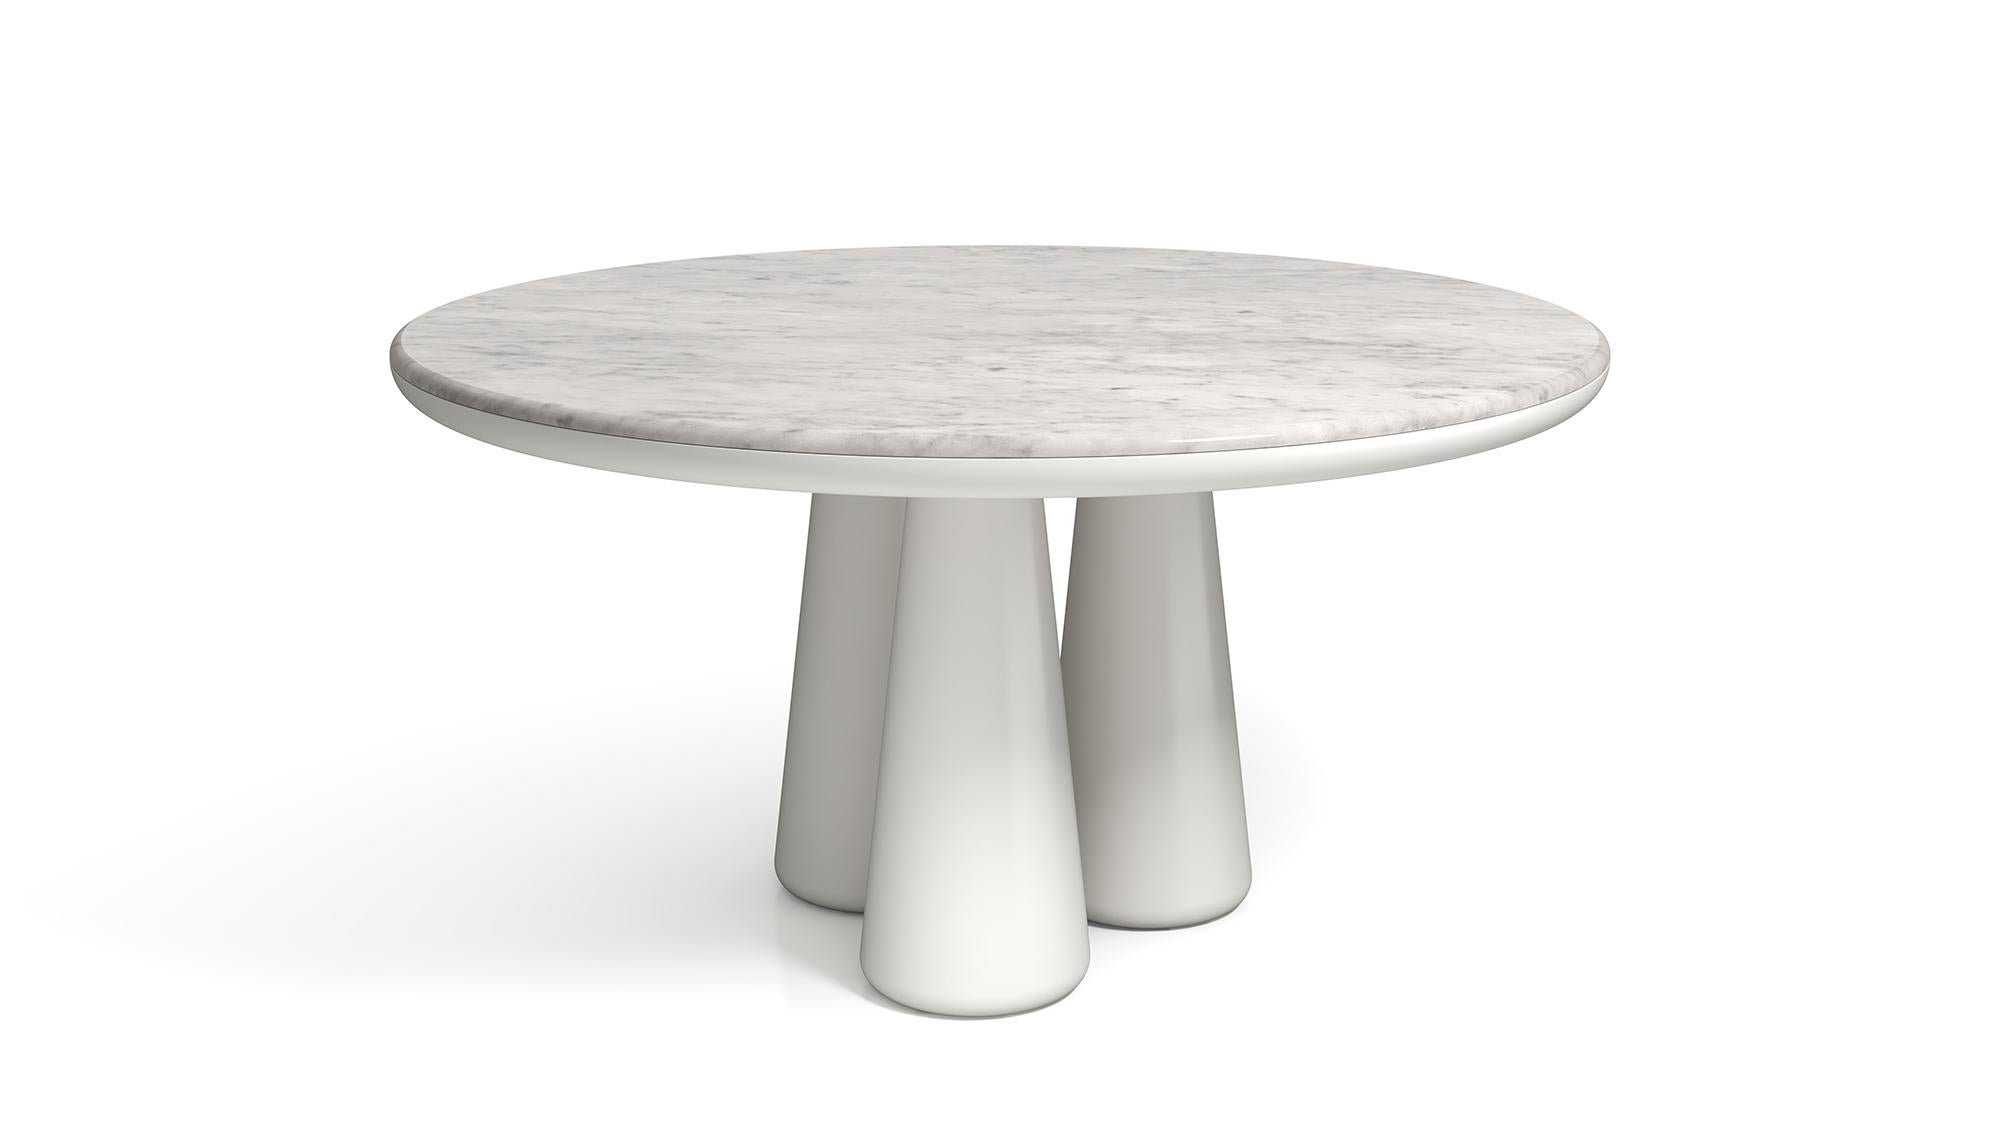 Table Isotopo design/One, produit par Scapin Collezioni
Édition limitée

Un plateau rond vibrant est associé à une base sculpturale composée de trois supports coniques arrondis qui confèrent au produit une forte tridimensionnalité.
Matériaux : base